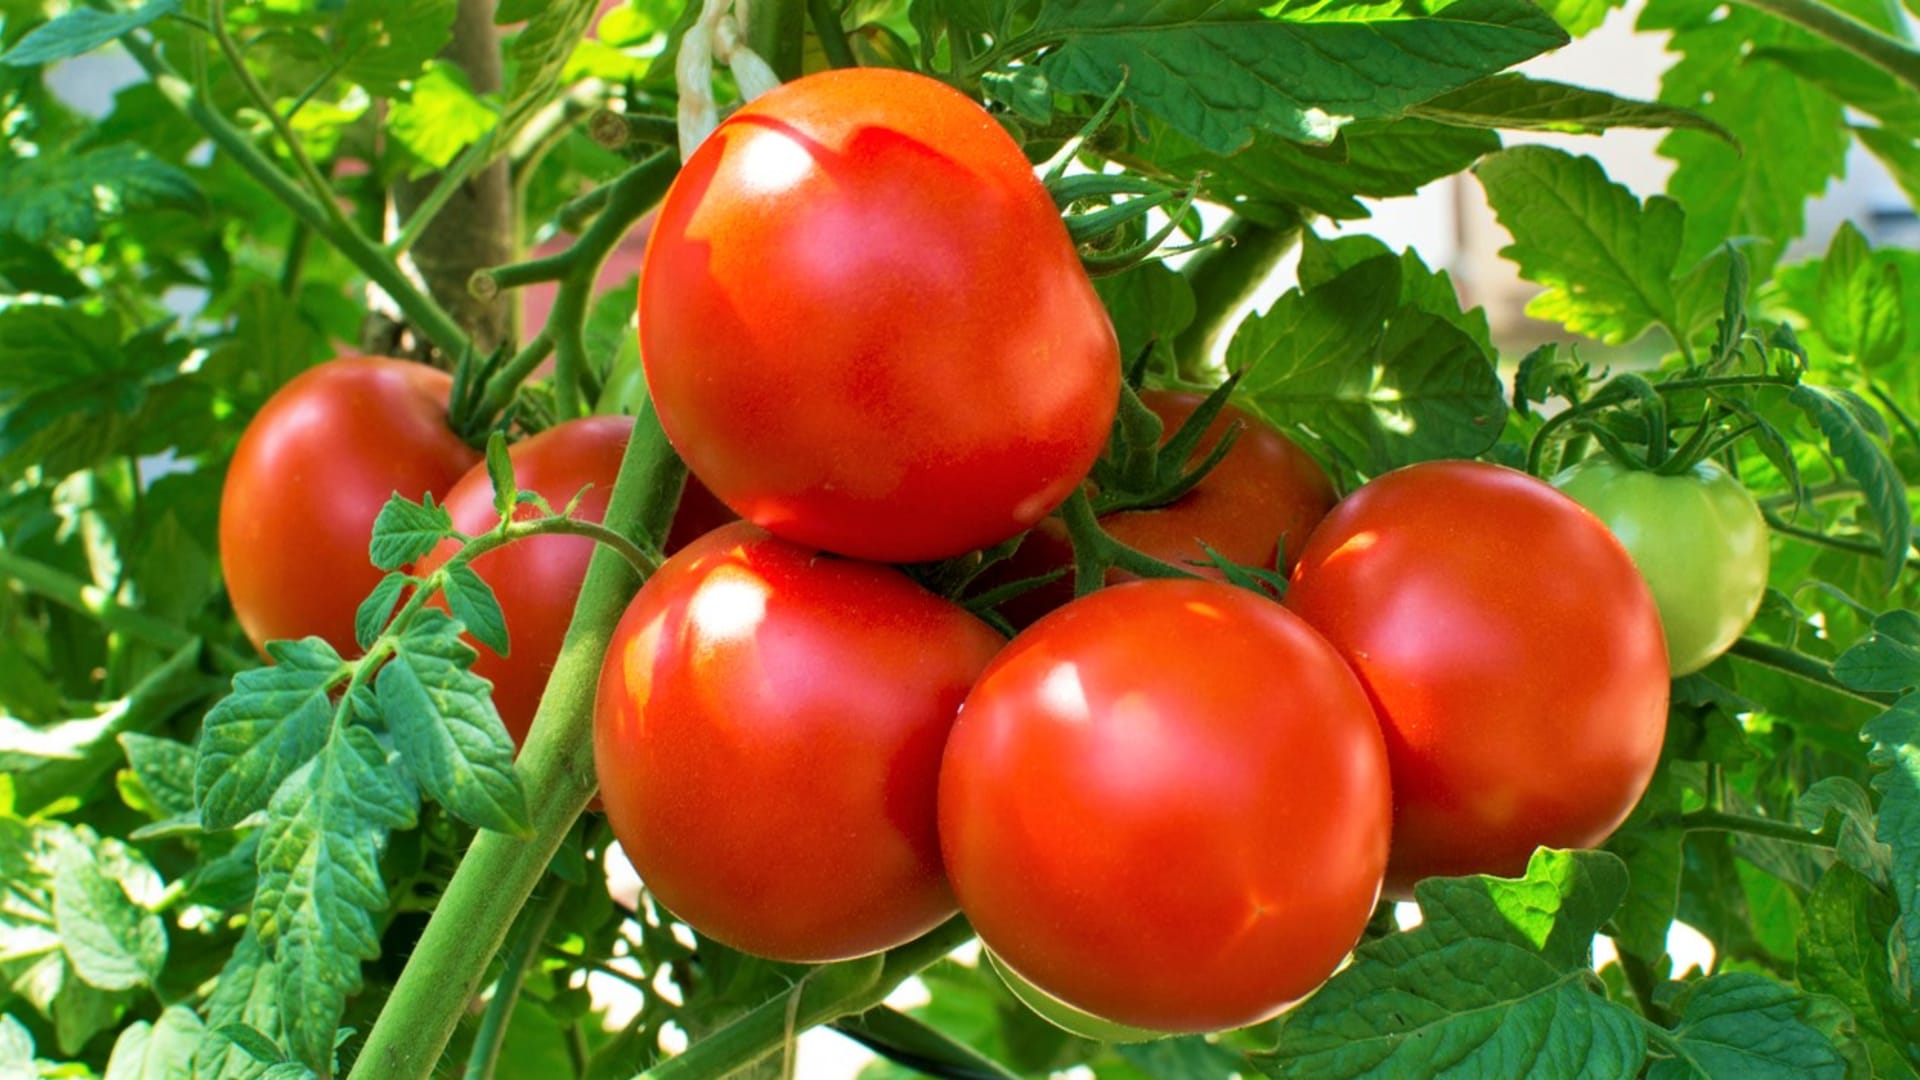 Polovina března je vhodný čas pro výsev semen rajčat na předpěstování sazenic. A protože strašákem všech pěstitelů rajčat je plíseň, tak můžete zkusit pěstovat kromě tradičních odrůd i protiplísňová rajčata.